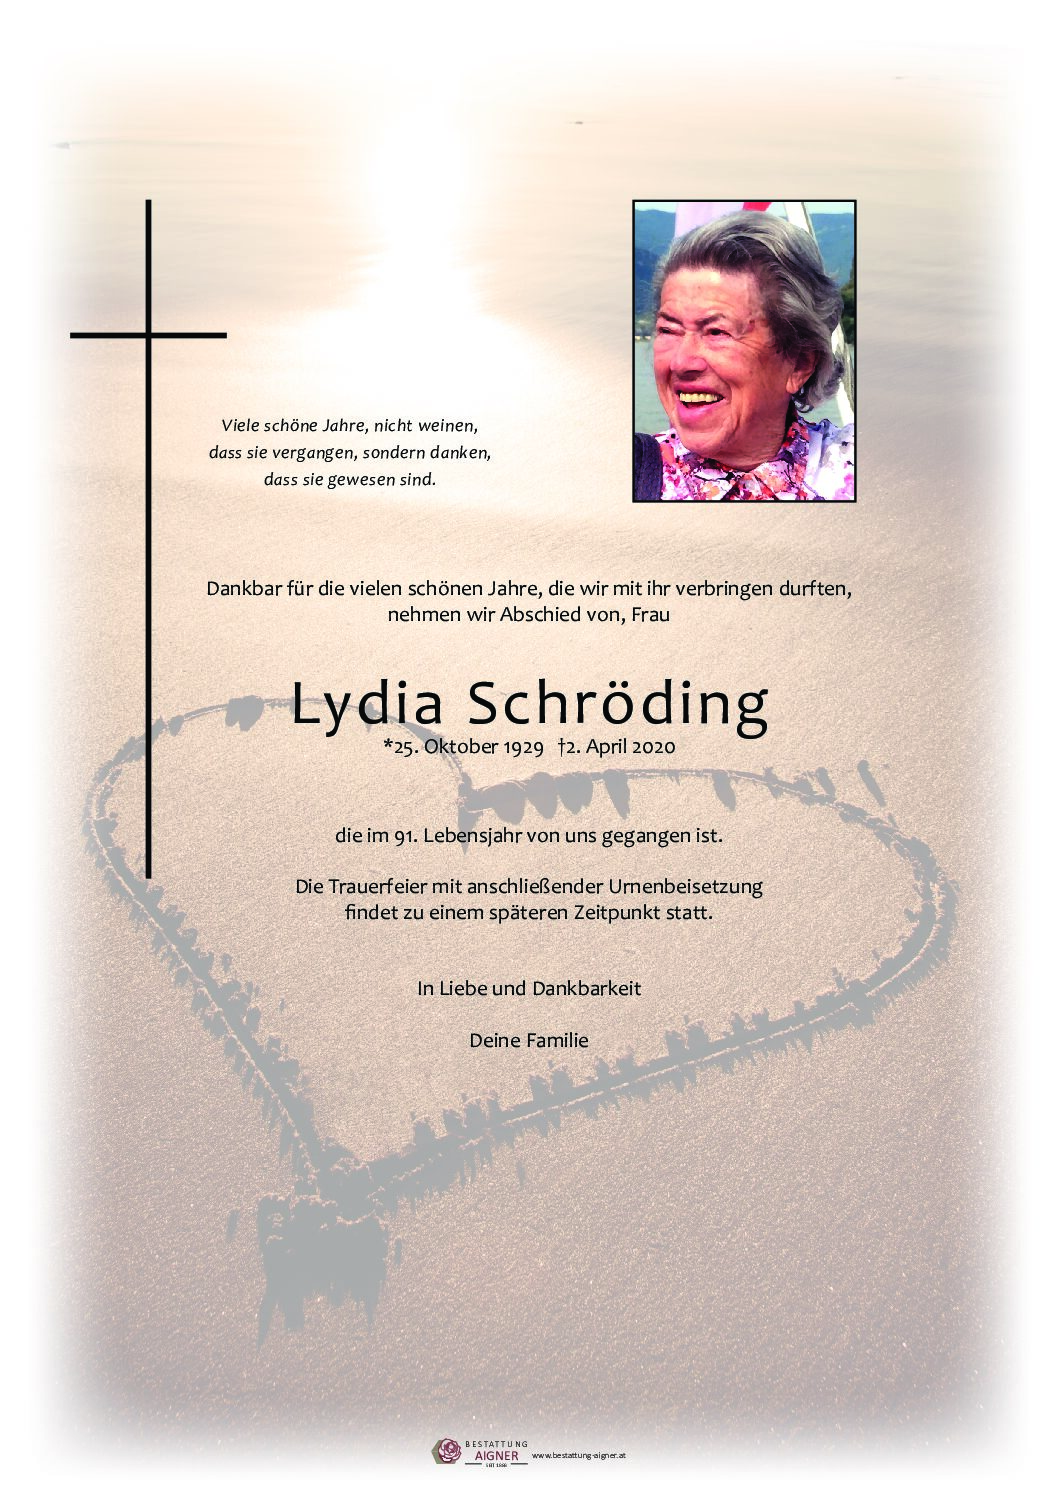 Lydia Schröding